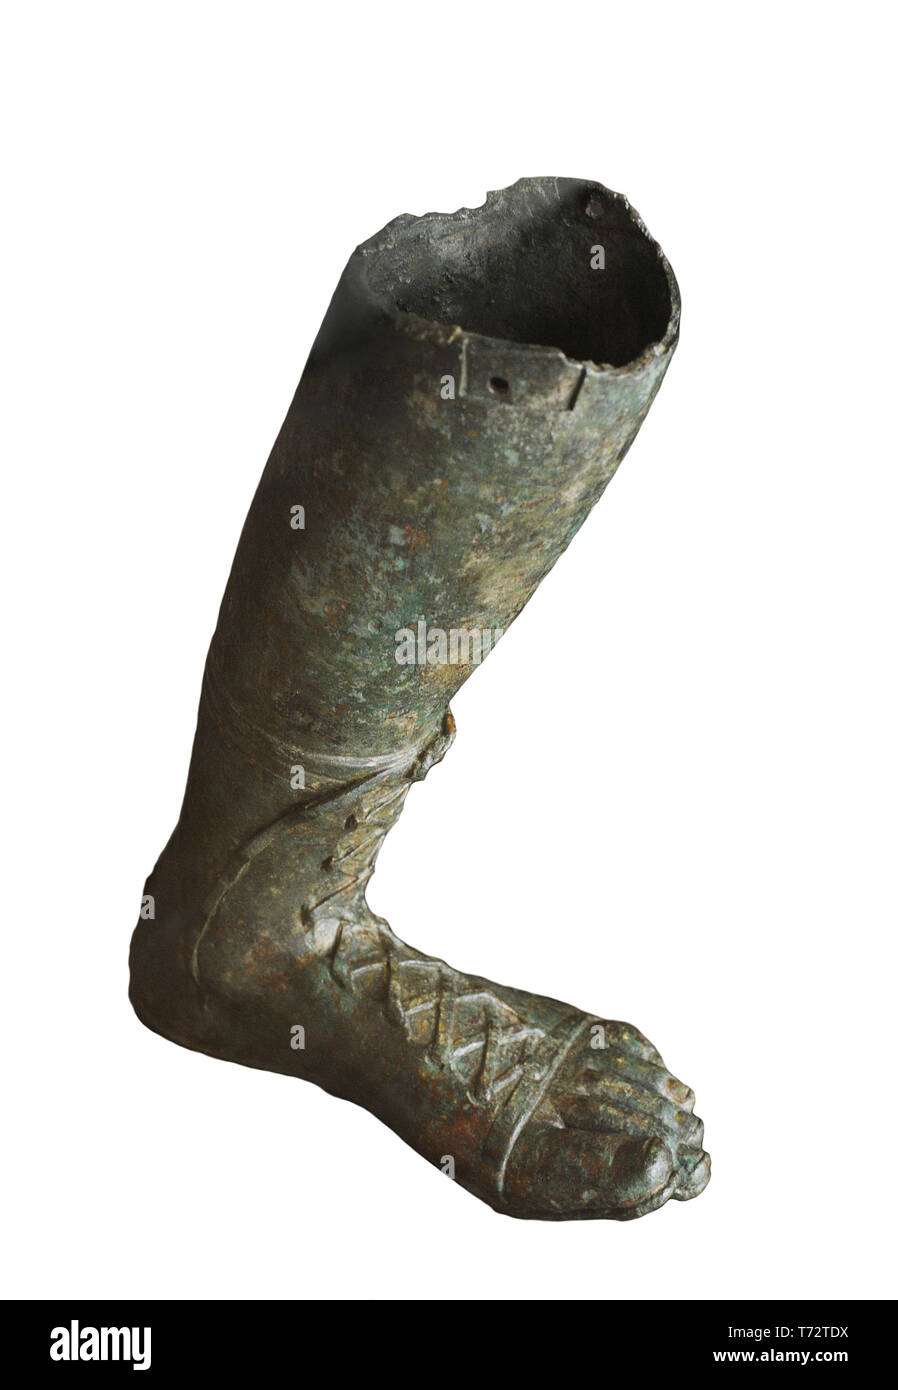 Dettaglio di una gamba appartenente ad una statua creata per decorare uno spazio pubblico. I secolo d.c. Bronzo. Museo Archeologico Nazionale. Madrid. Spagna. Foto Stock